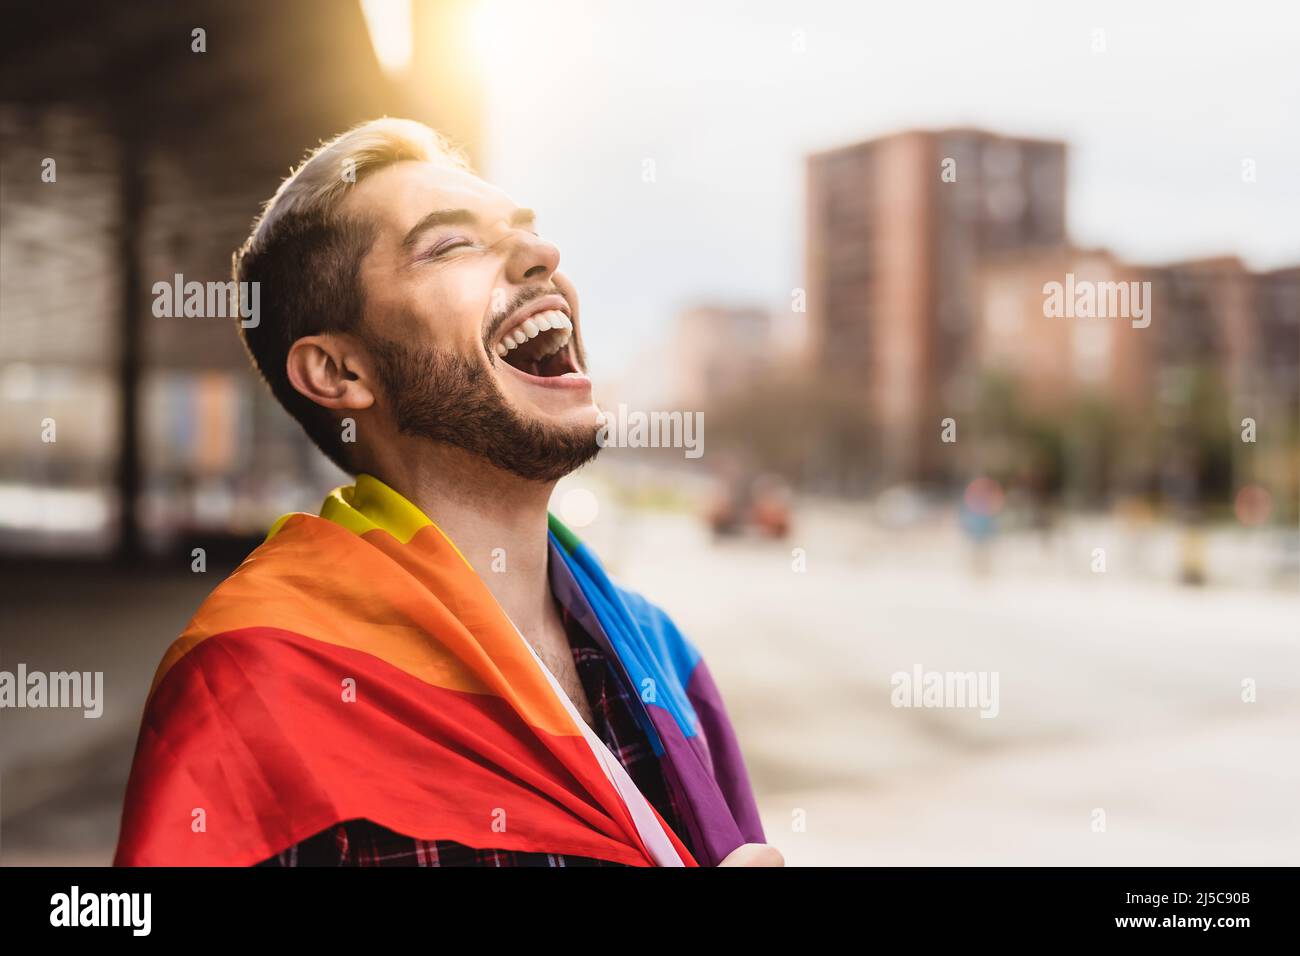 Happy gay man having fun holding rainbow flag symbol of LGBTQ community Stock Photo